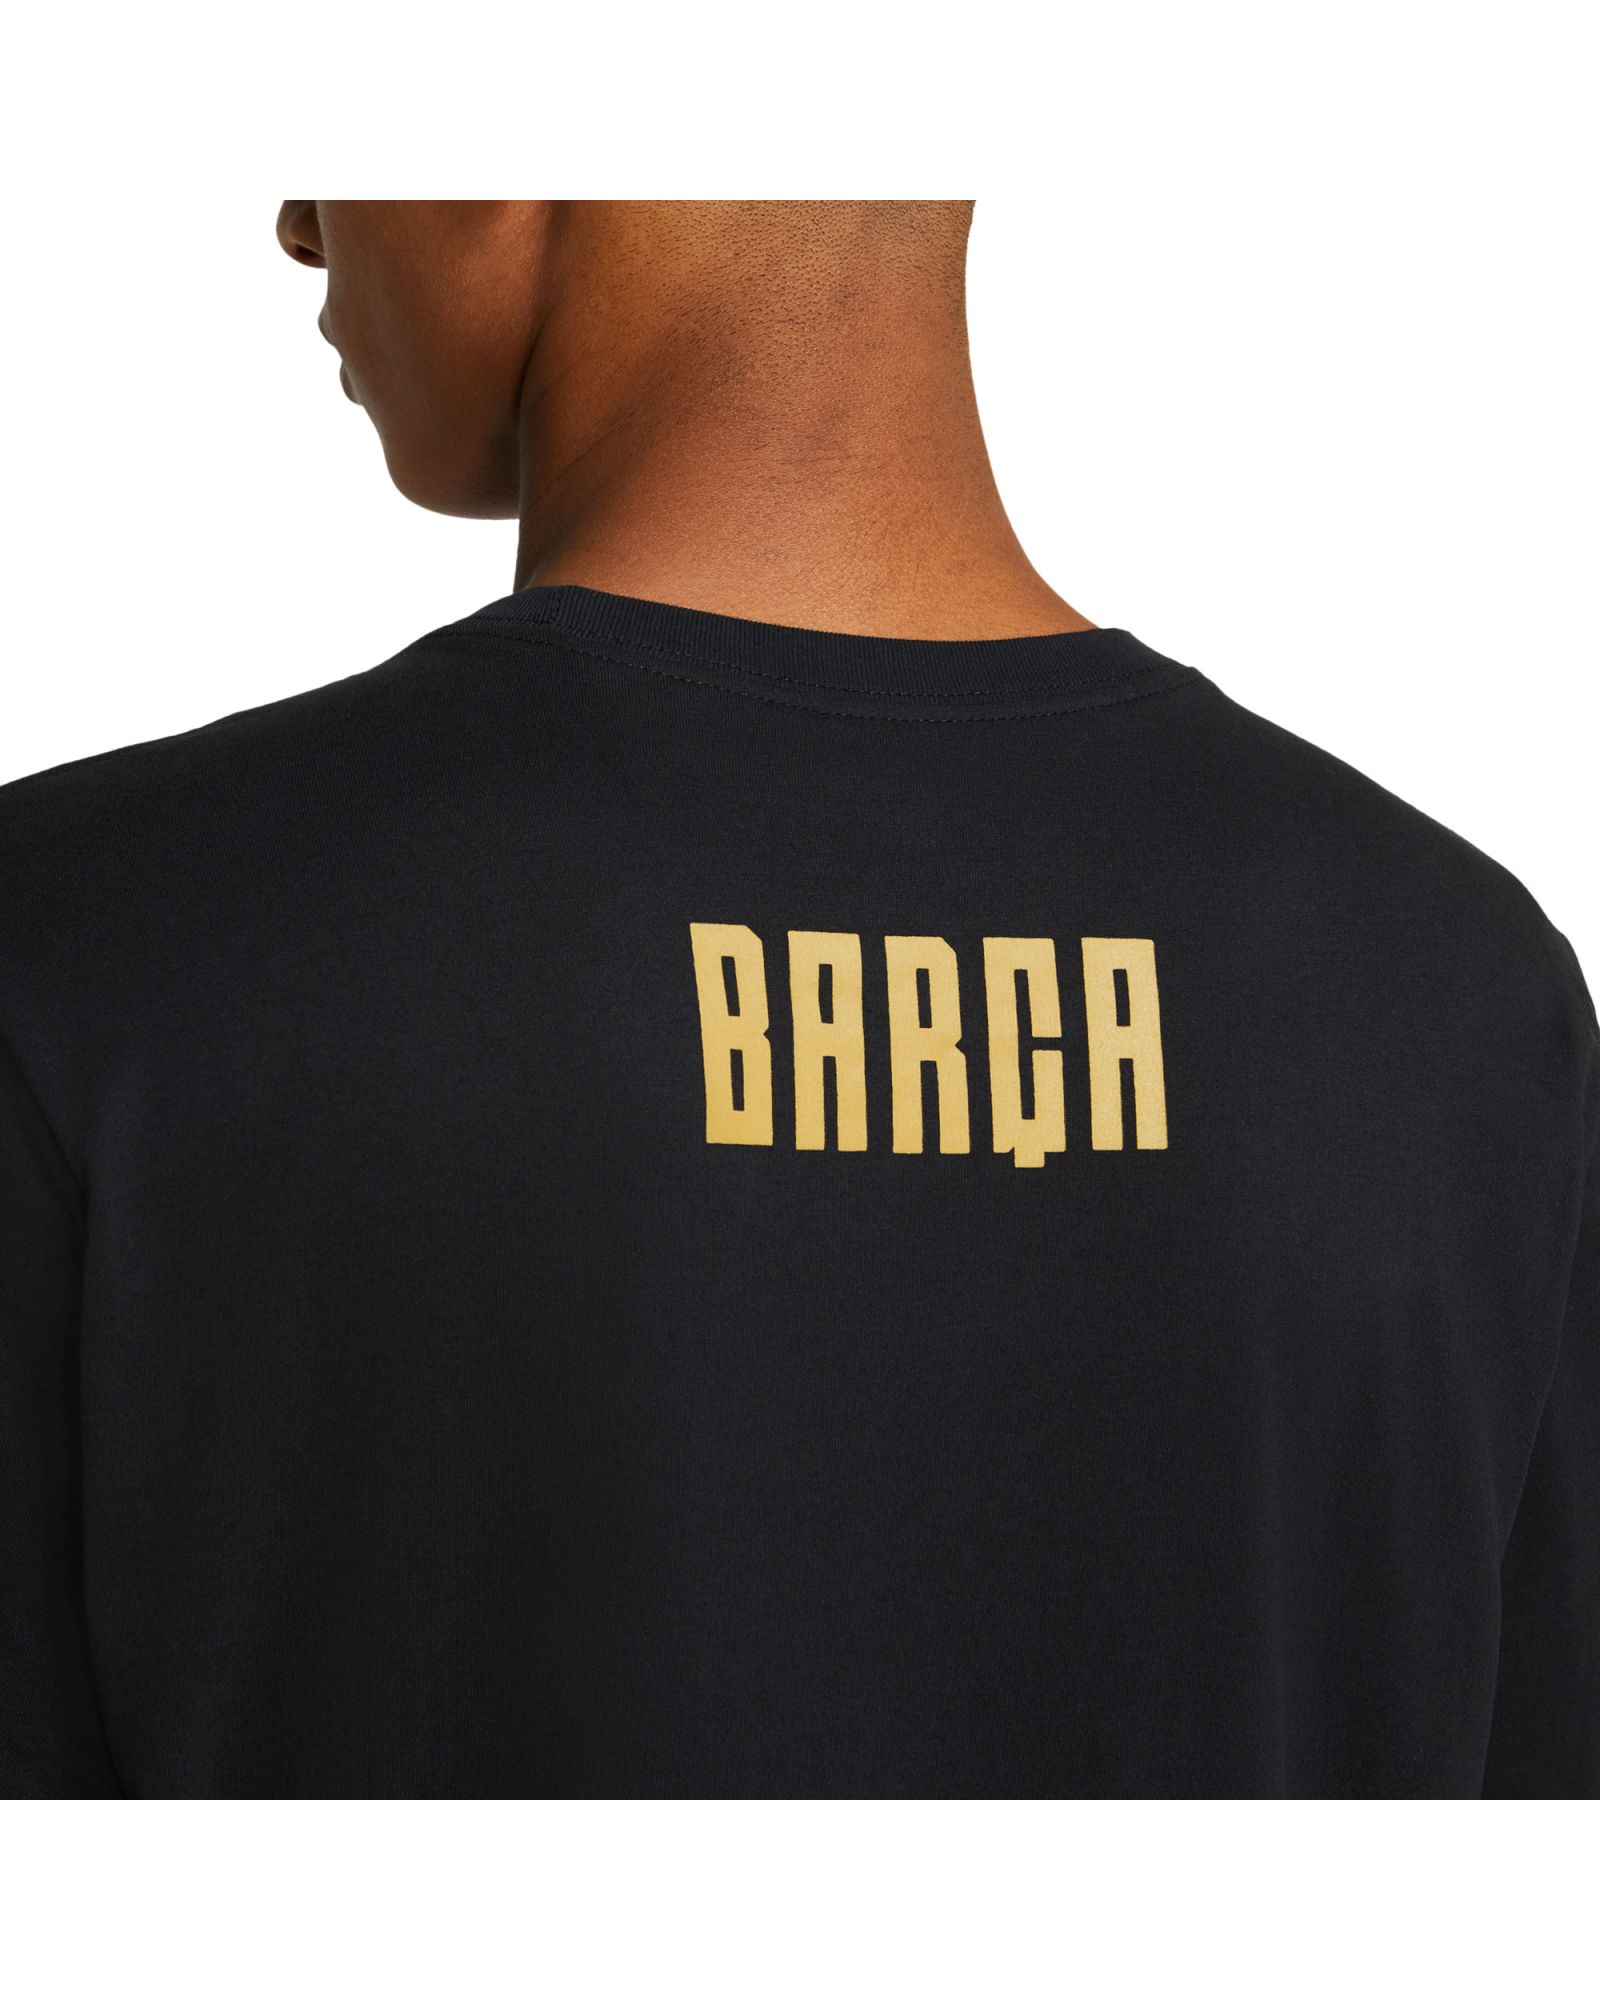 Camiseta de Paseo del FC Barcelona 2020/2021 Negro - Fútbol Factory